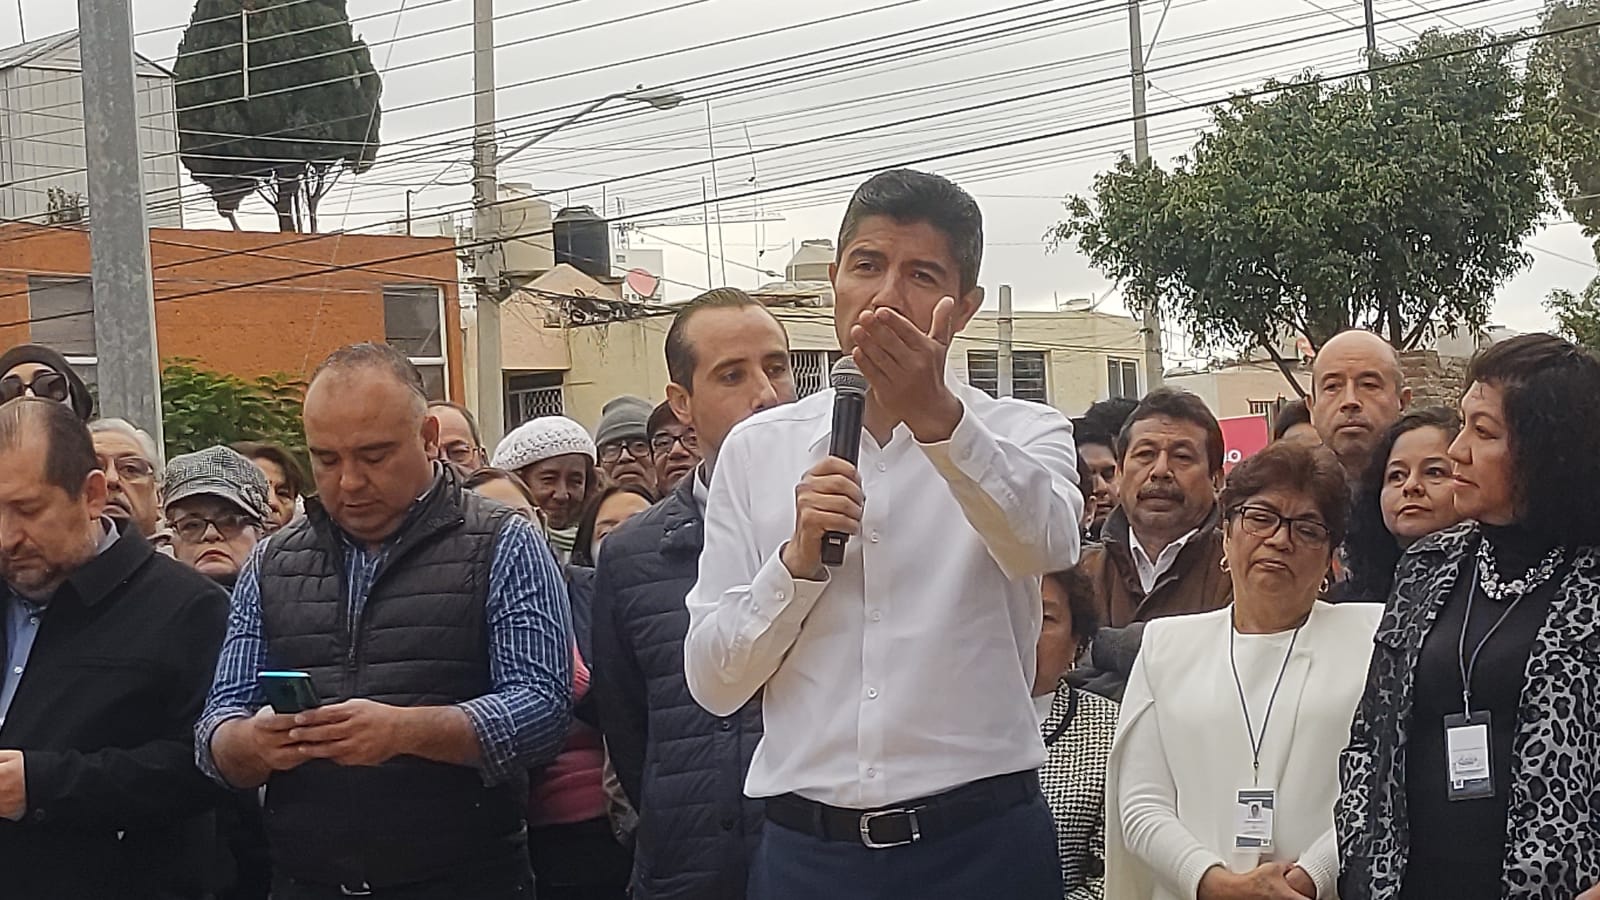 Video desde Puebla: Edil auxiliar suplente estará en la Resurrección, advirtió Eduardo Rivera